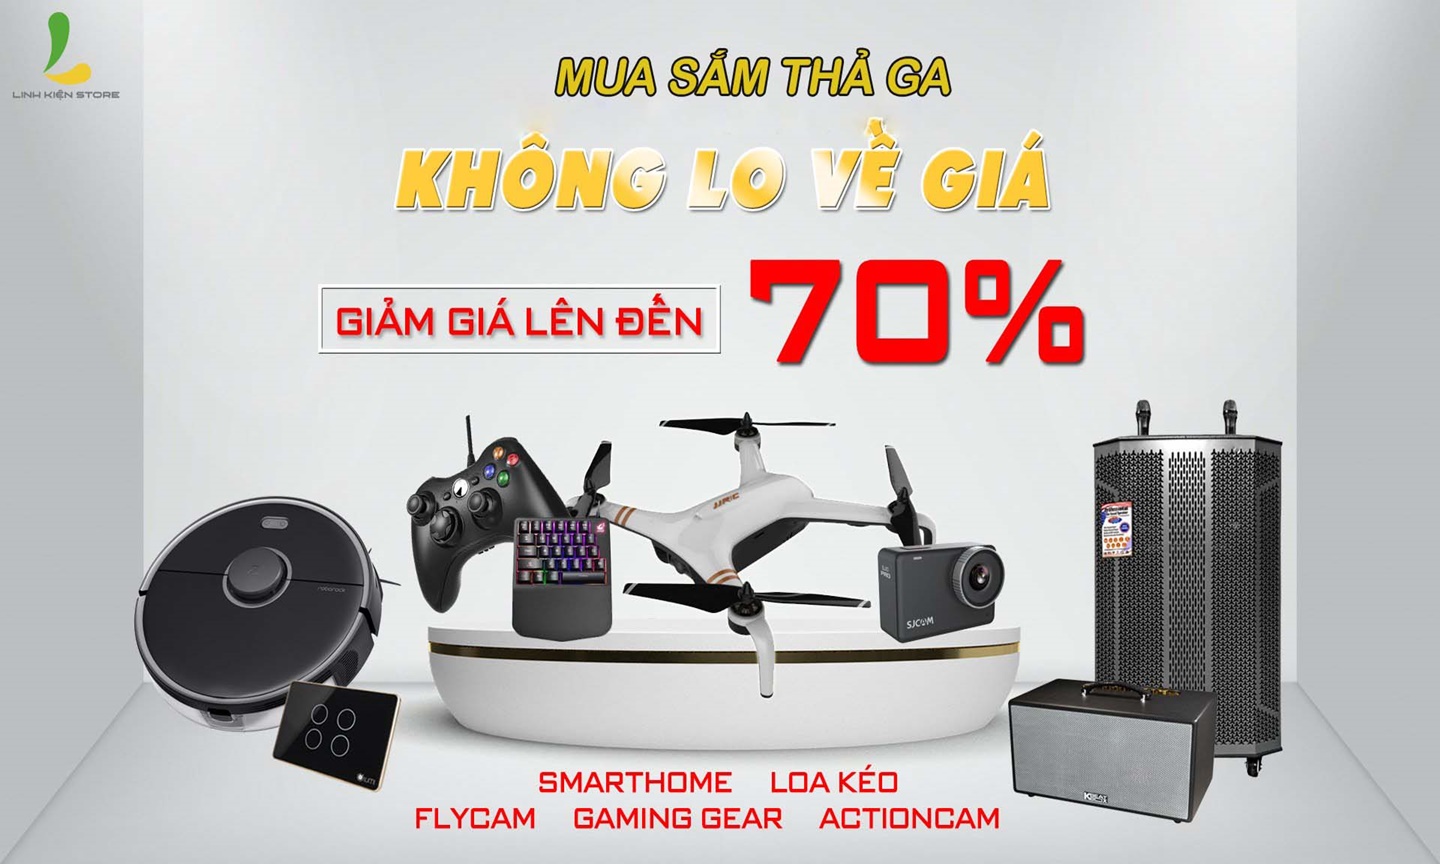 Linh Kiện Store - Địa chỉ mua bán flycam chất lượng tại TP. HCM